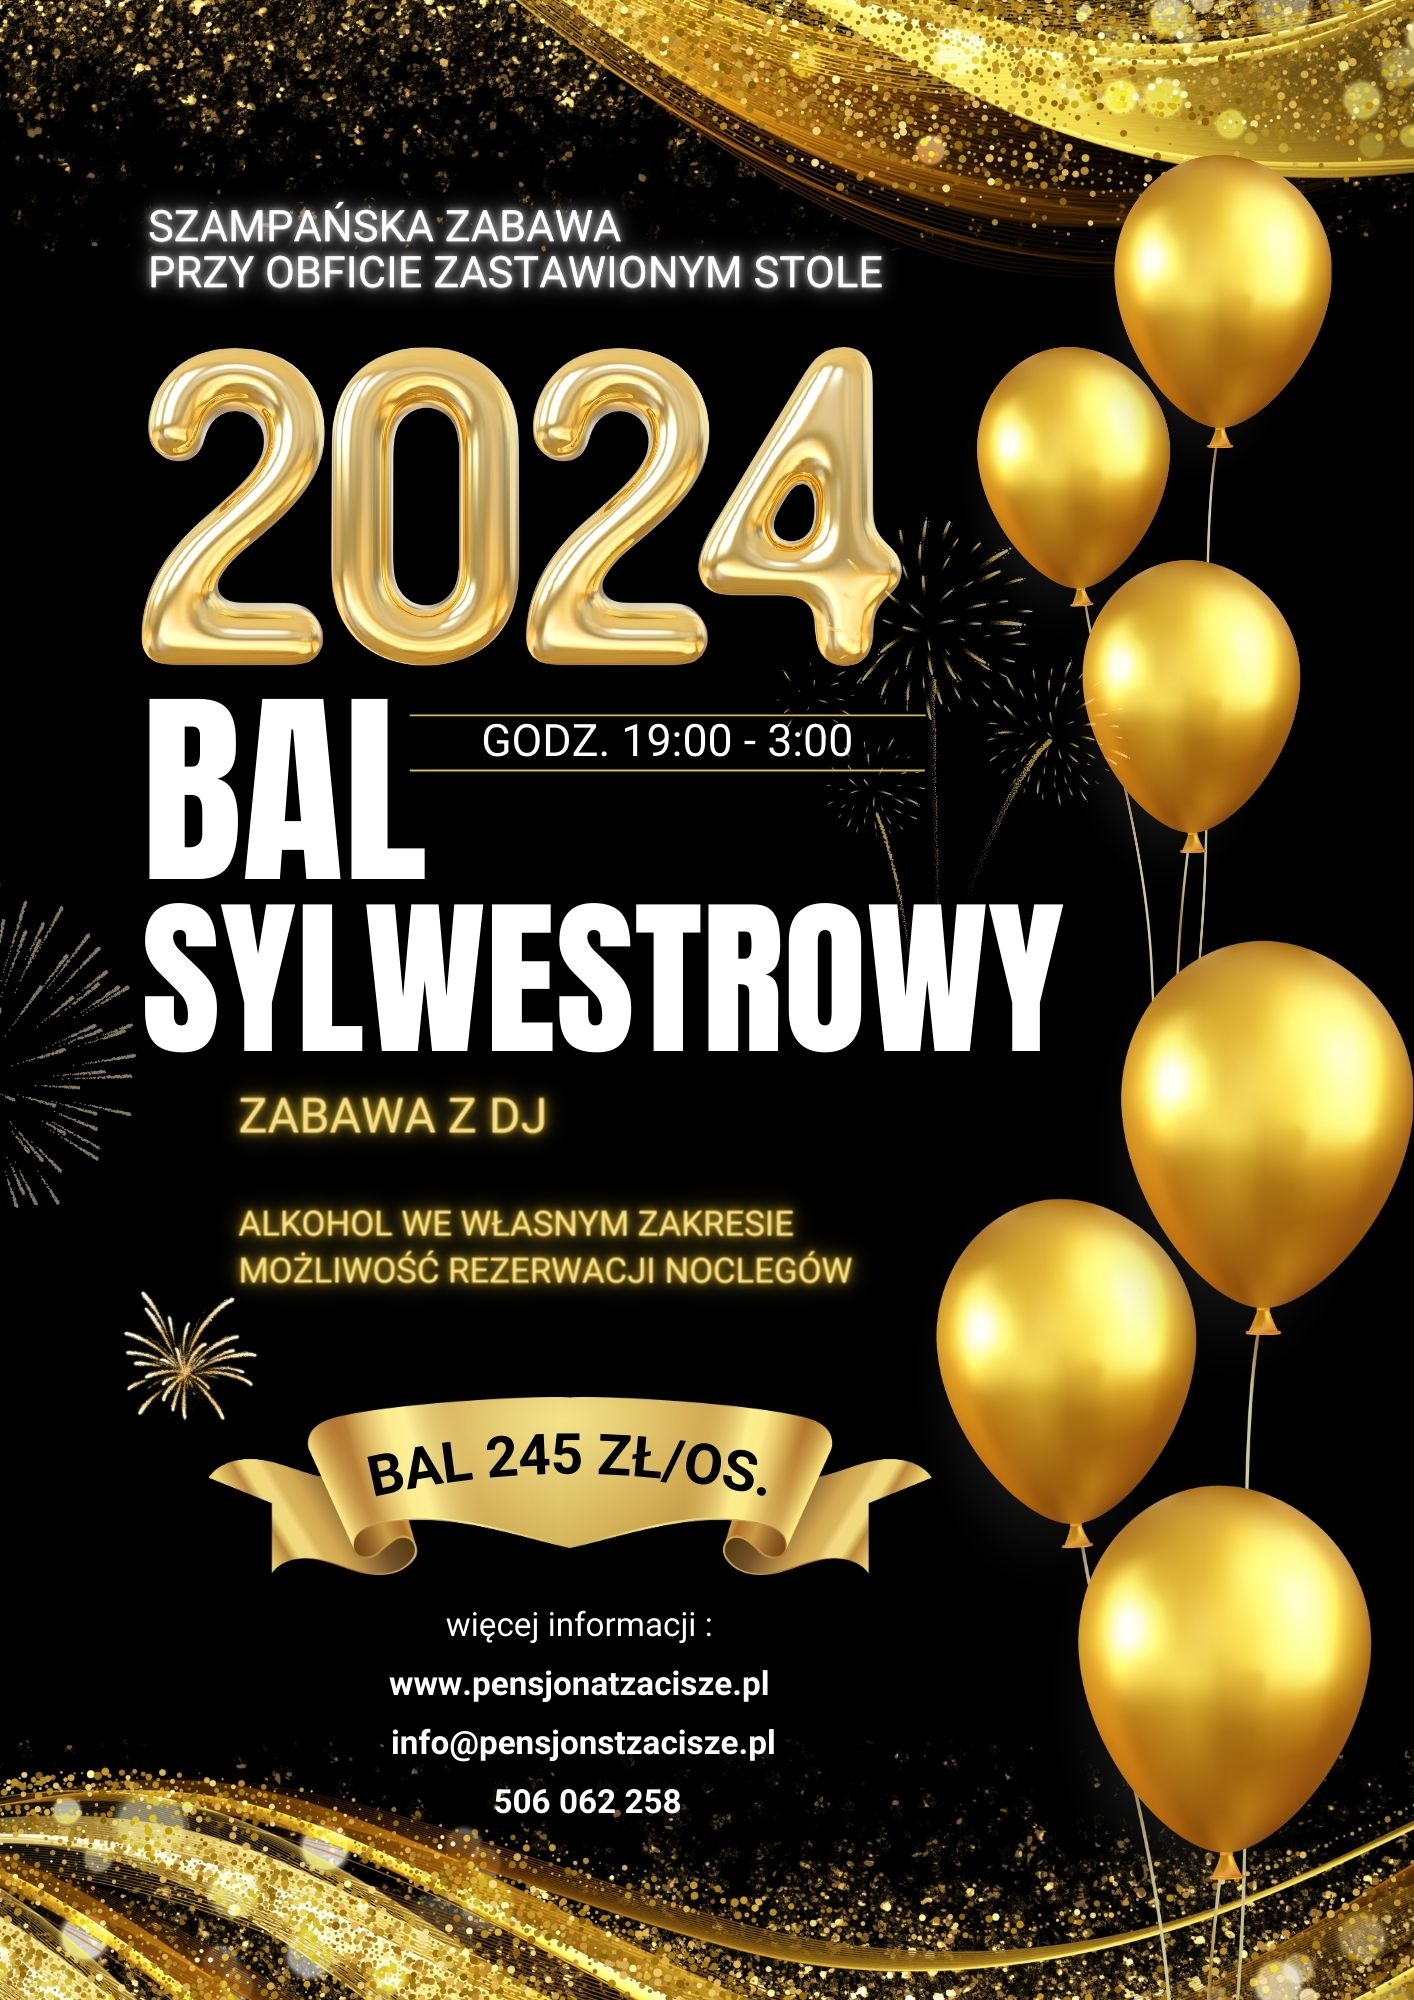 Bal sylwestrowy 2024 - oferta na Sylwester 2023/2024 od Pensjonatu Zacisze